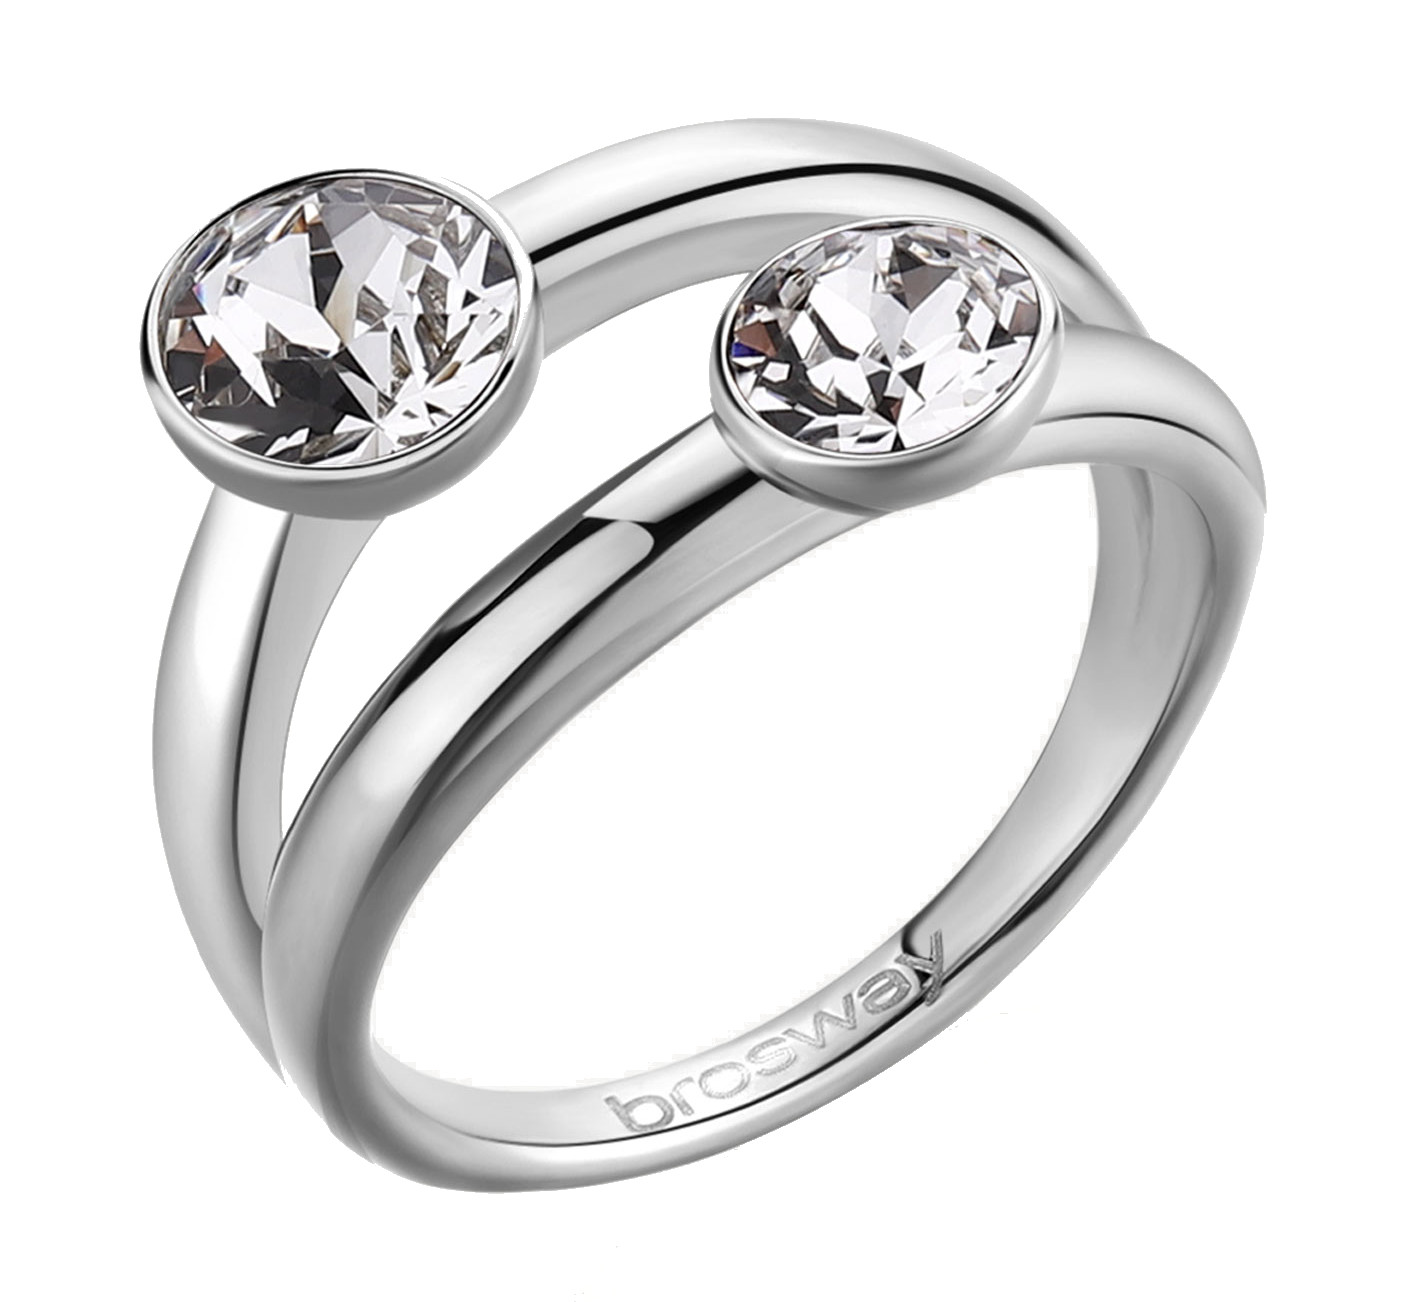 Brosway Výrazný ocelový prsten s krystaly Affinity BFF174 54 mm